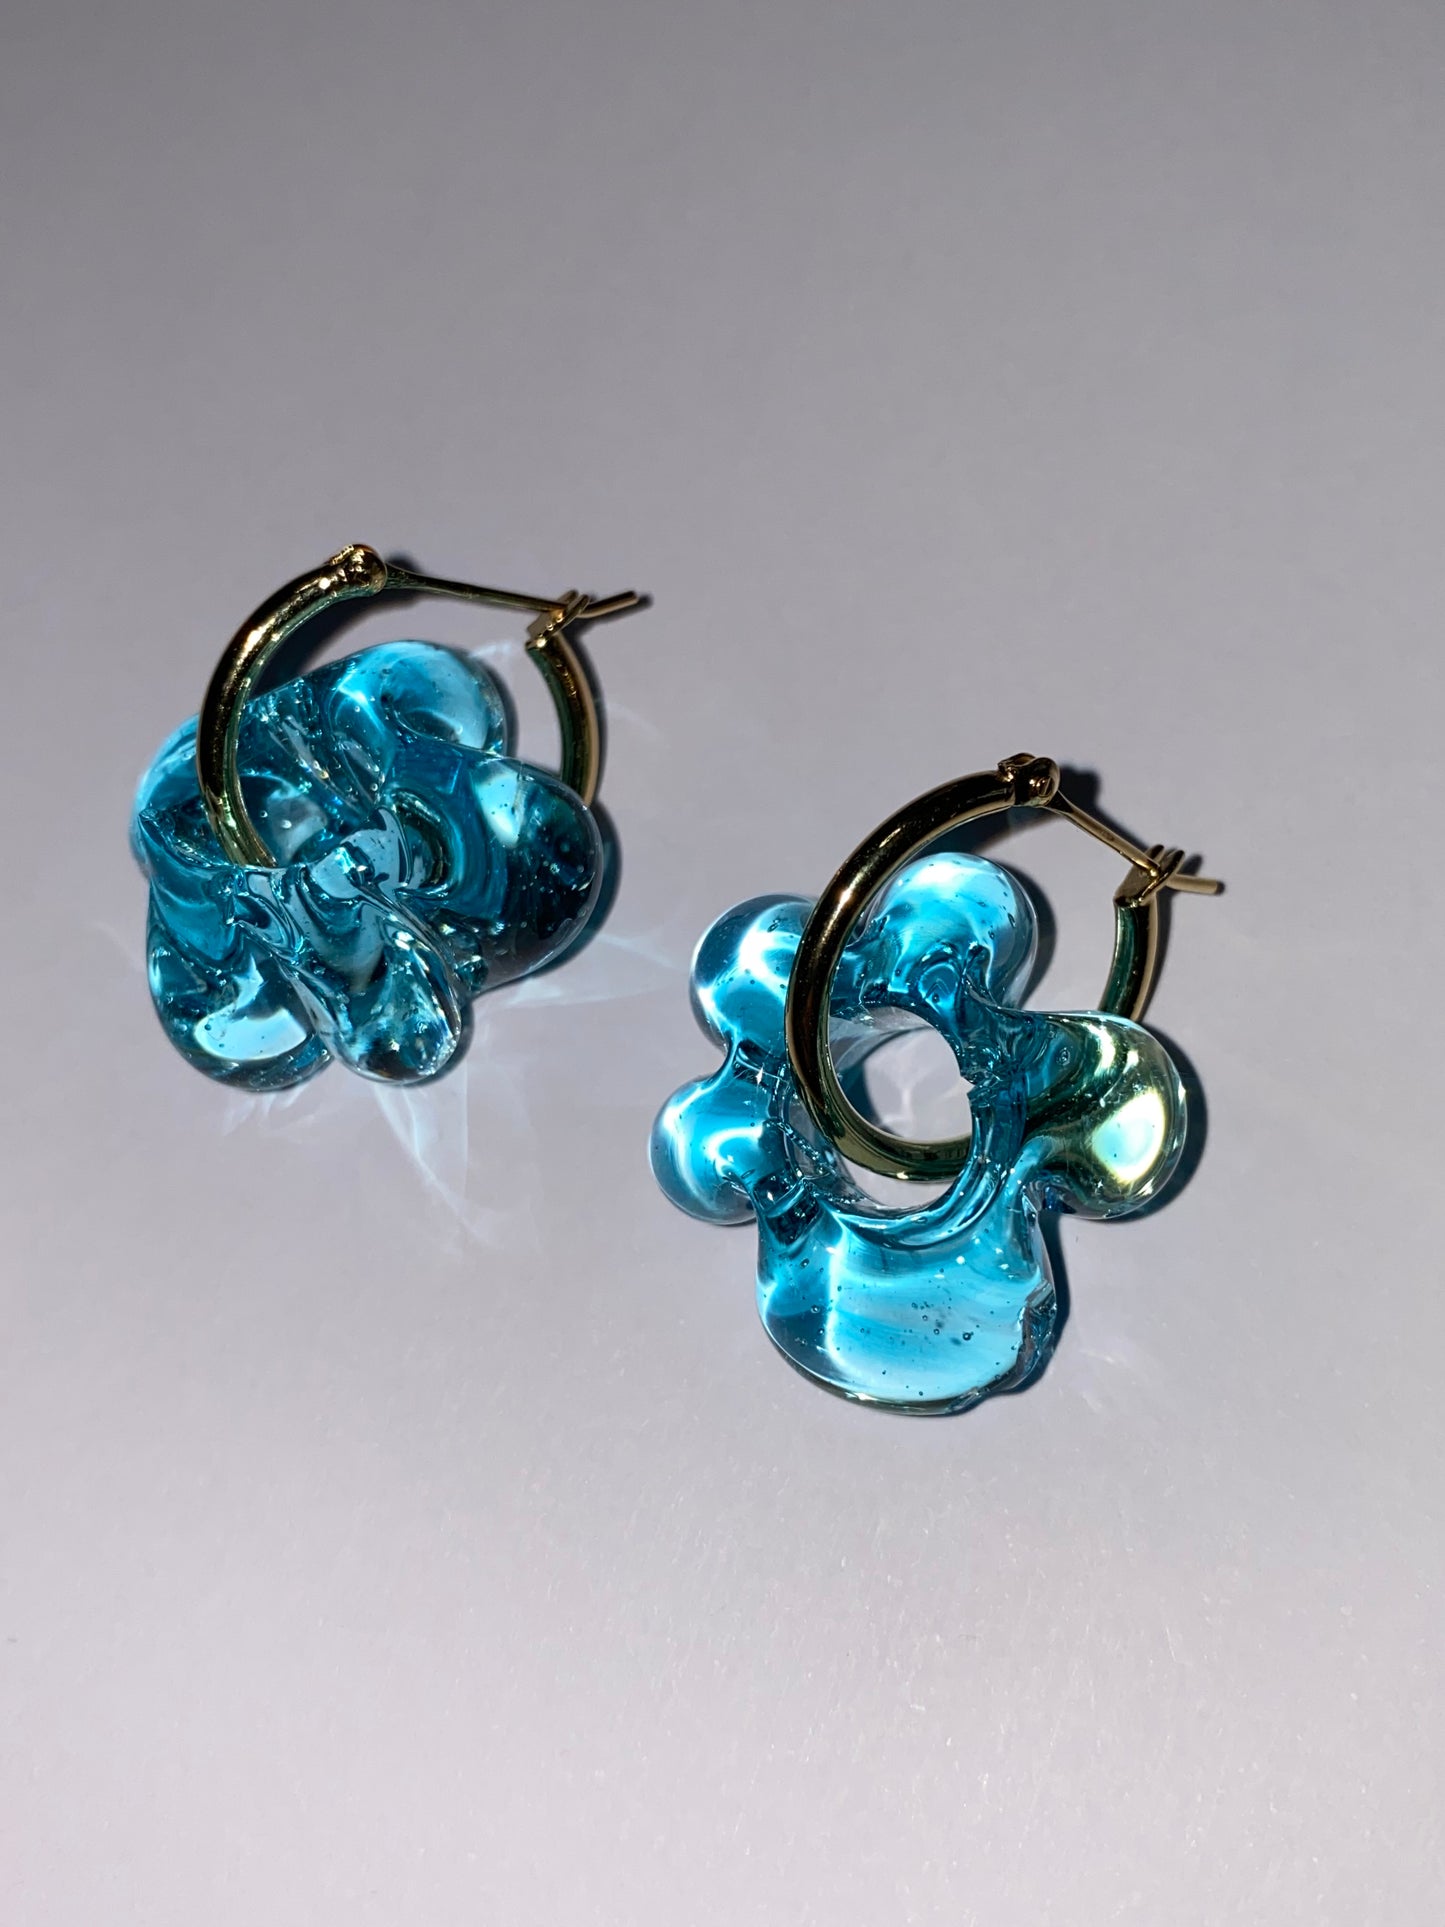 Mini Fleur earrings - Light turquoise